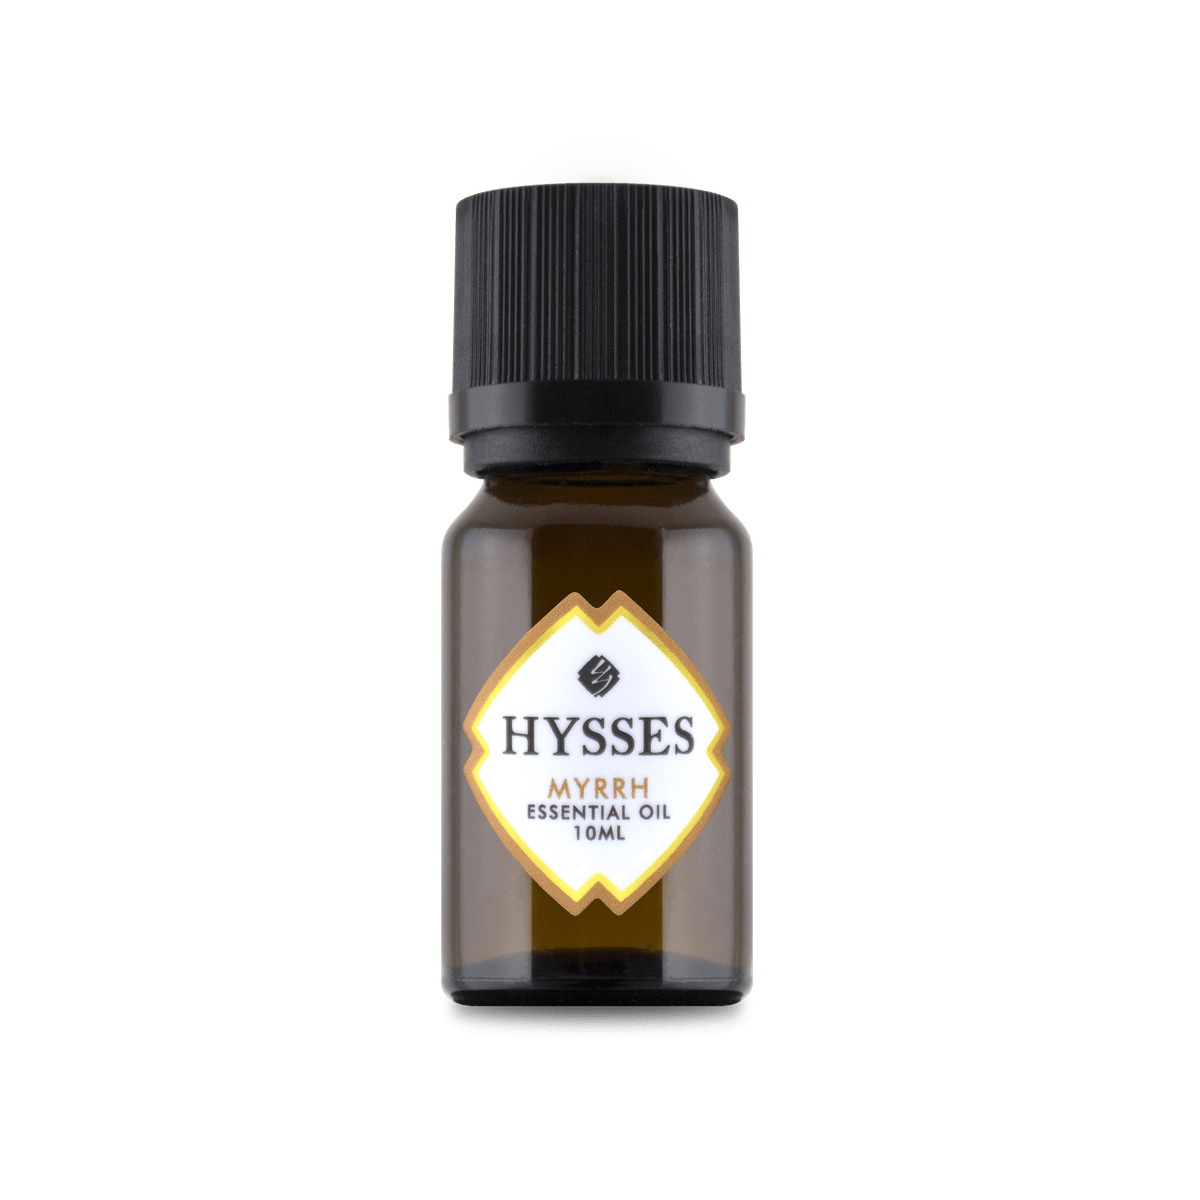 Hysses Malaysia Essential Oil Myrrh